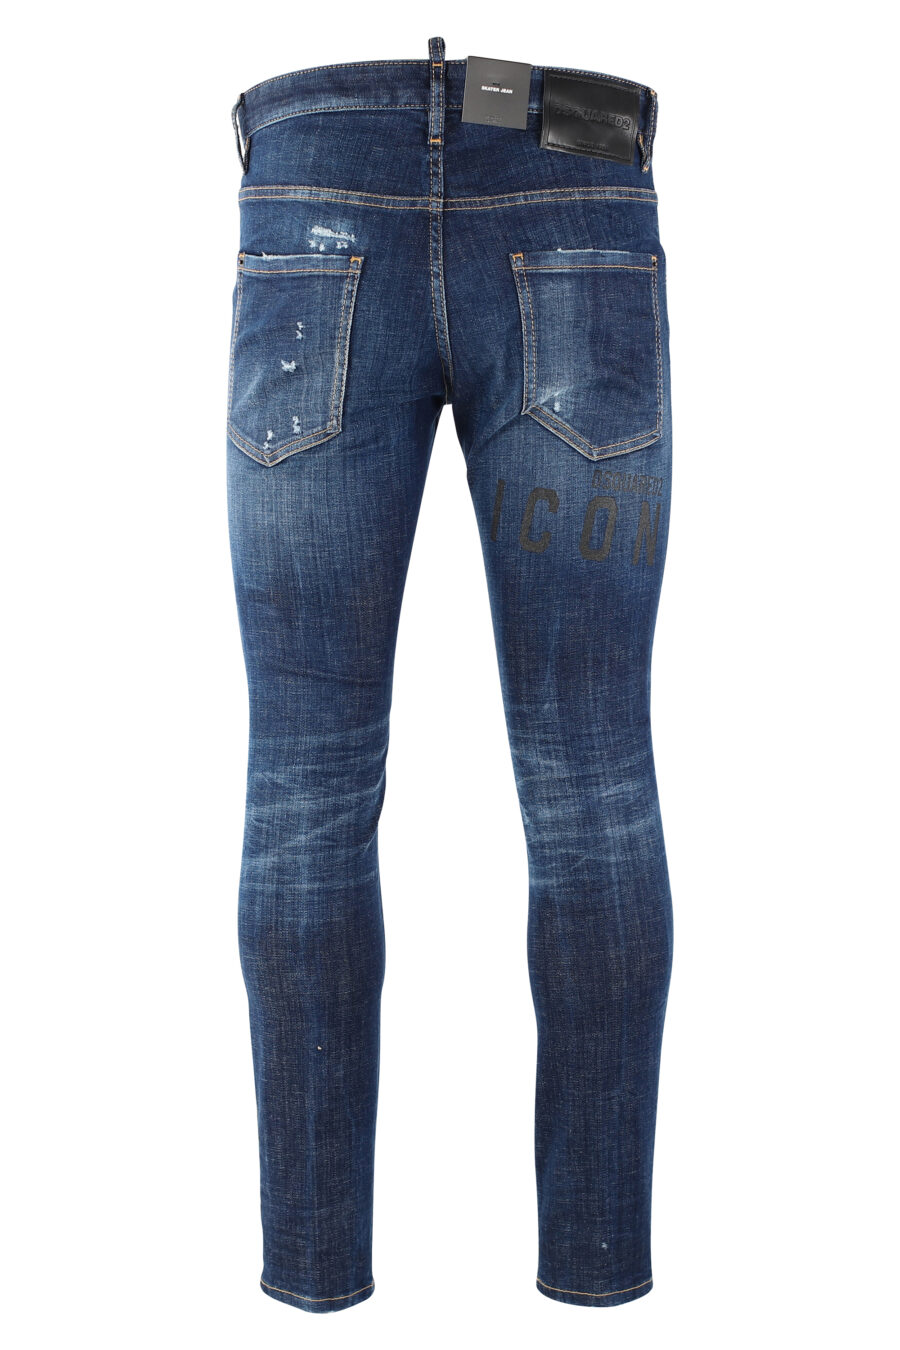 Pantalón vaquero "icon skater jean" azul oscuro semidesgastado - IMG 9658 1